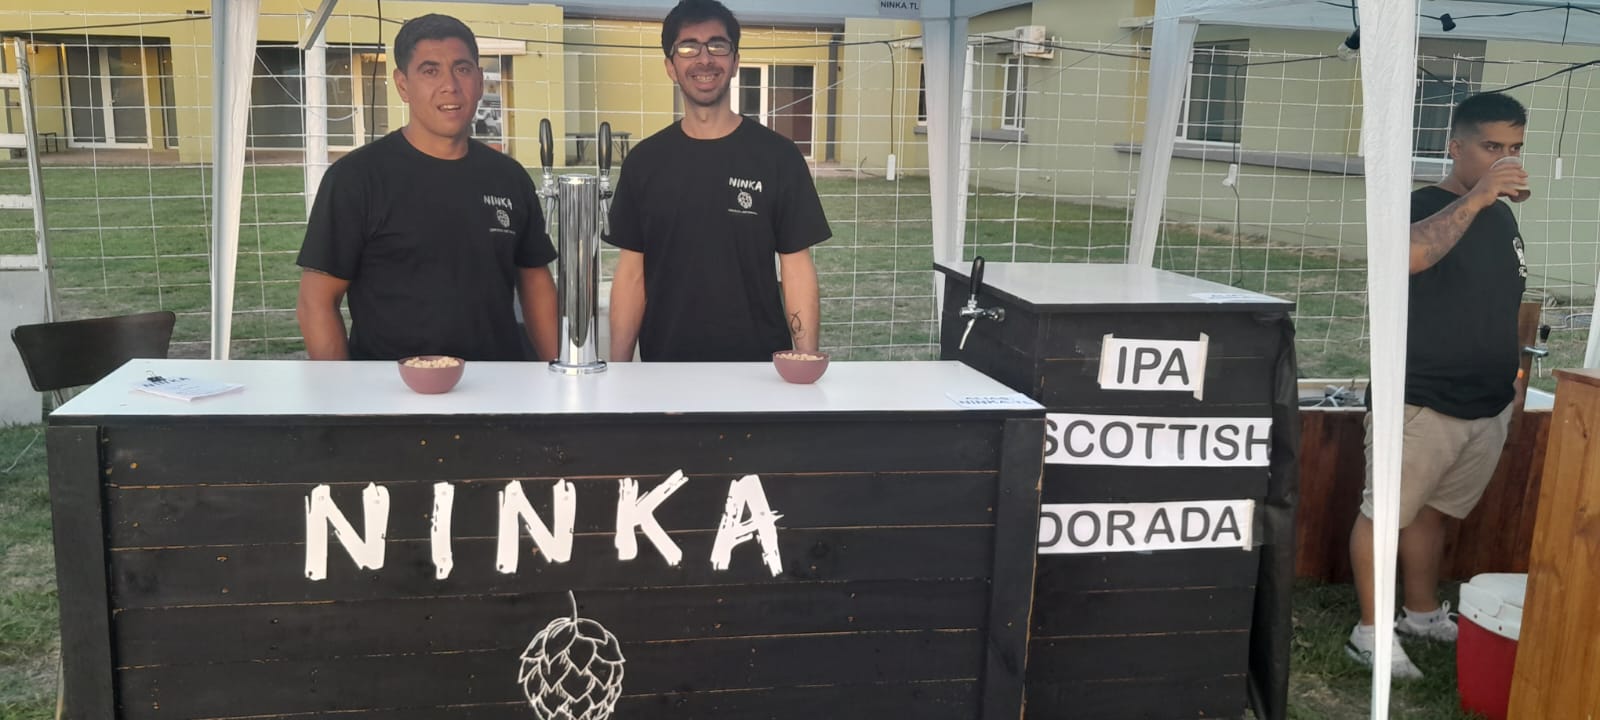 Dos amigos crearon una cerveza artesanal y la marca crece: ahora quieren tener su propio bar